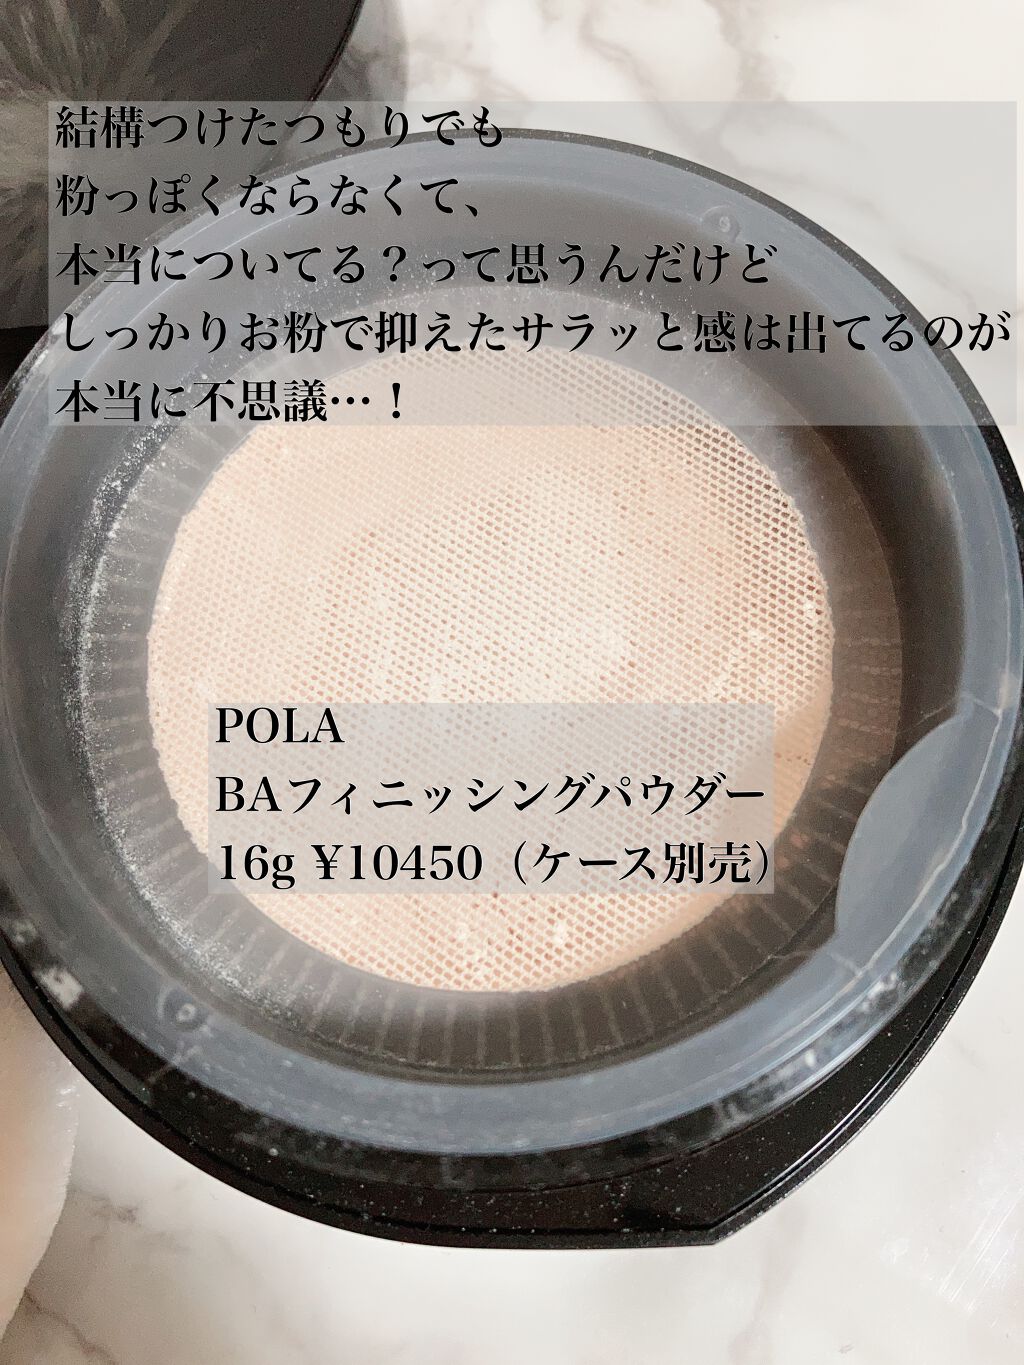 POLA B.A フィニッシングパウダー N 16g (ケース付き)